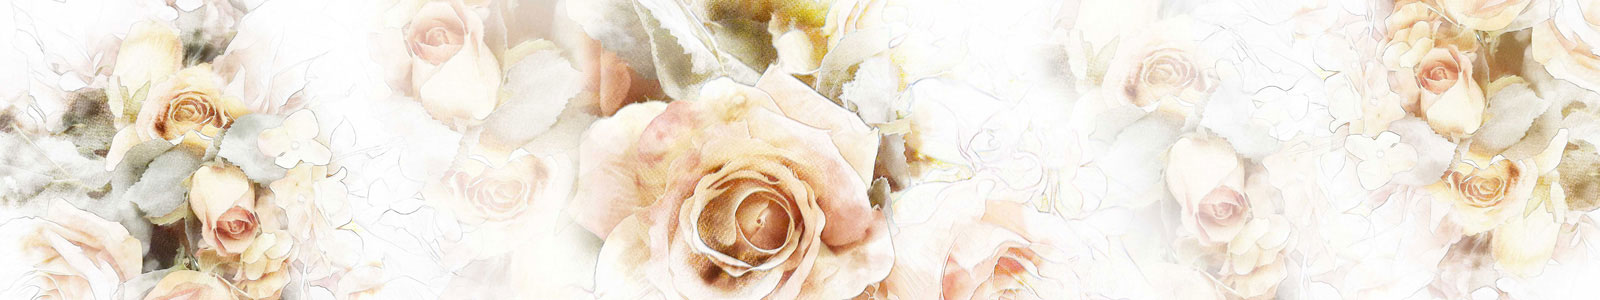 №6286 - Рисунок нежной розы на светлом фоне